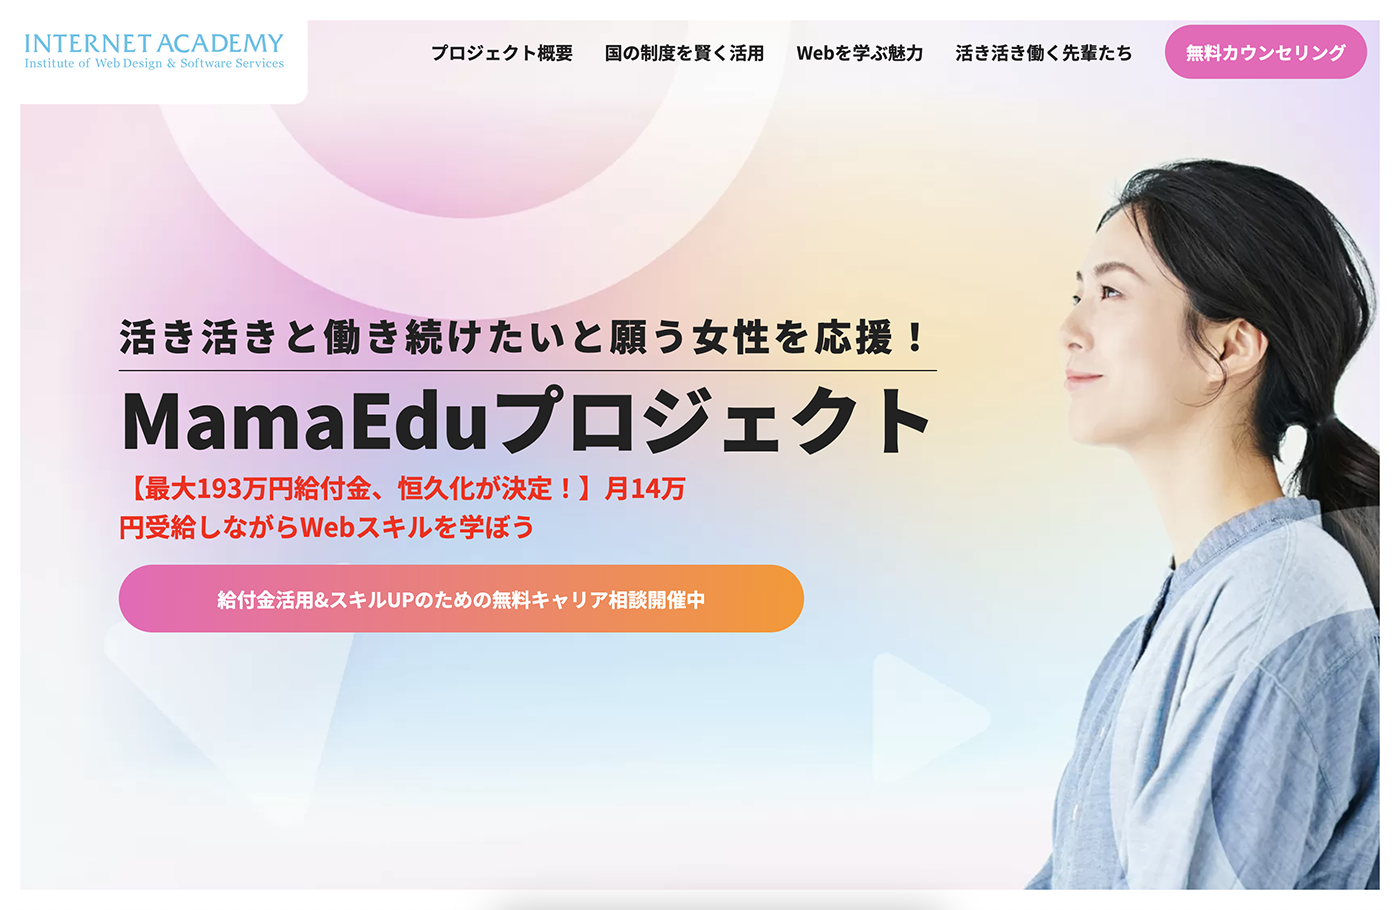 インターネット・アカデミーの「MamaEduプロジェクト」